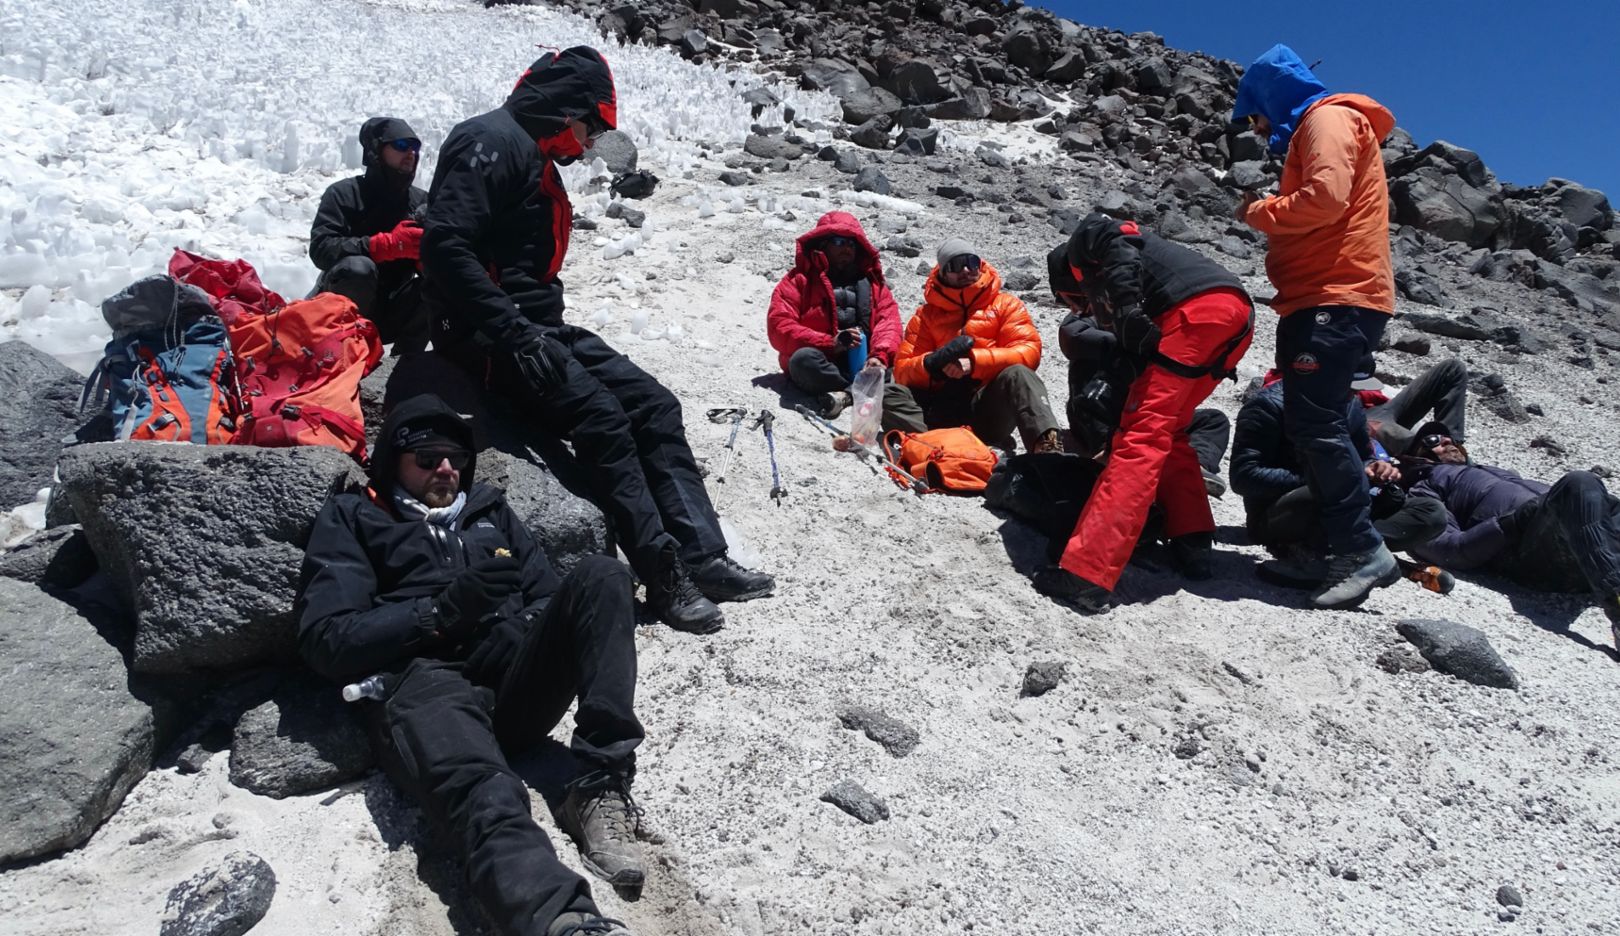 Grenzen ausloten: Das Team wurde von europäischen Bergsteigern, chilenischen Bergführern sowie zwei erfahrene Alpinmedizinern ergänzt. 